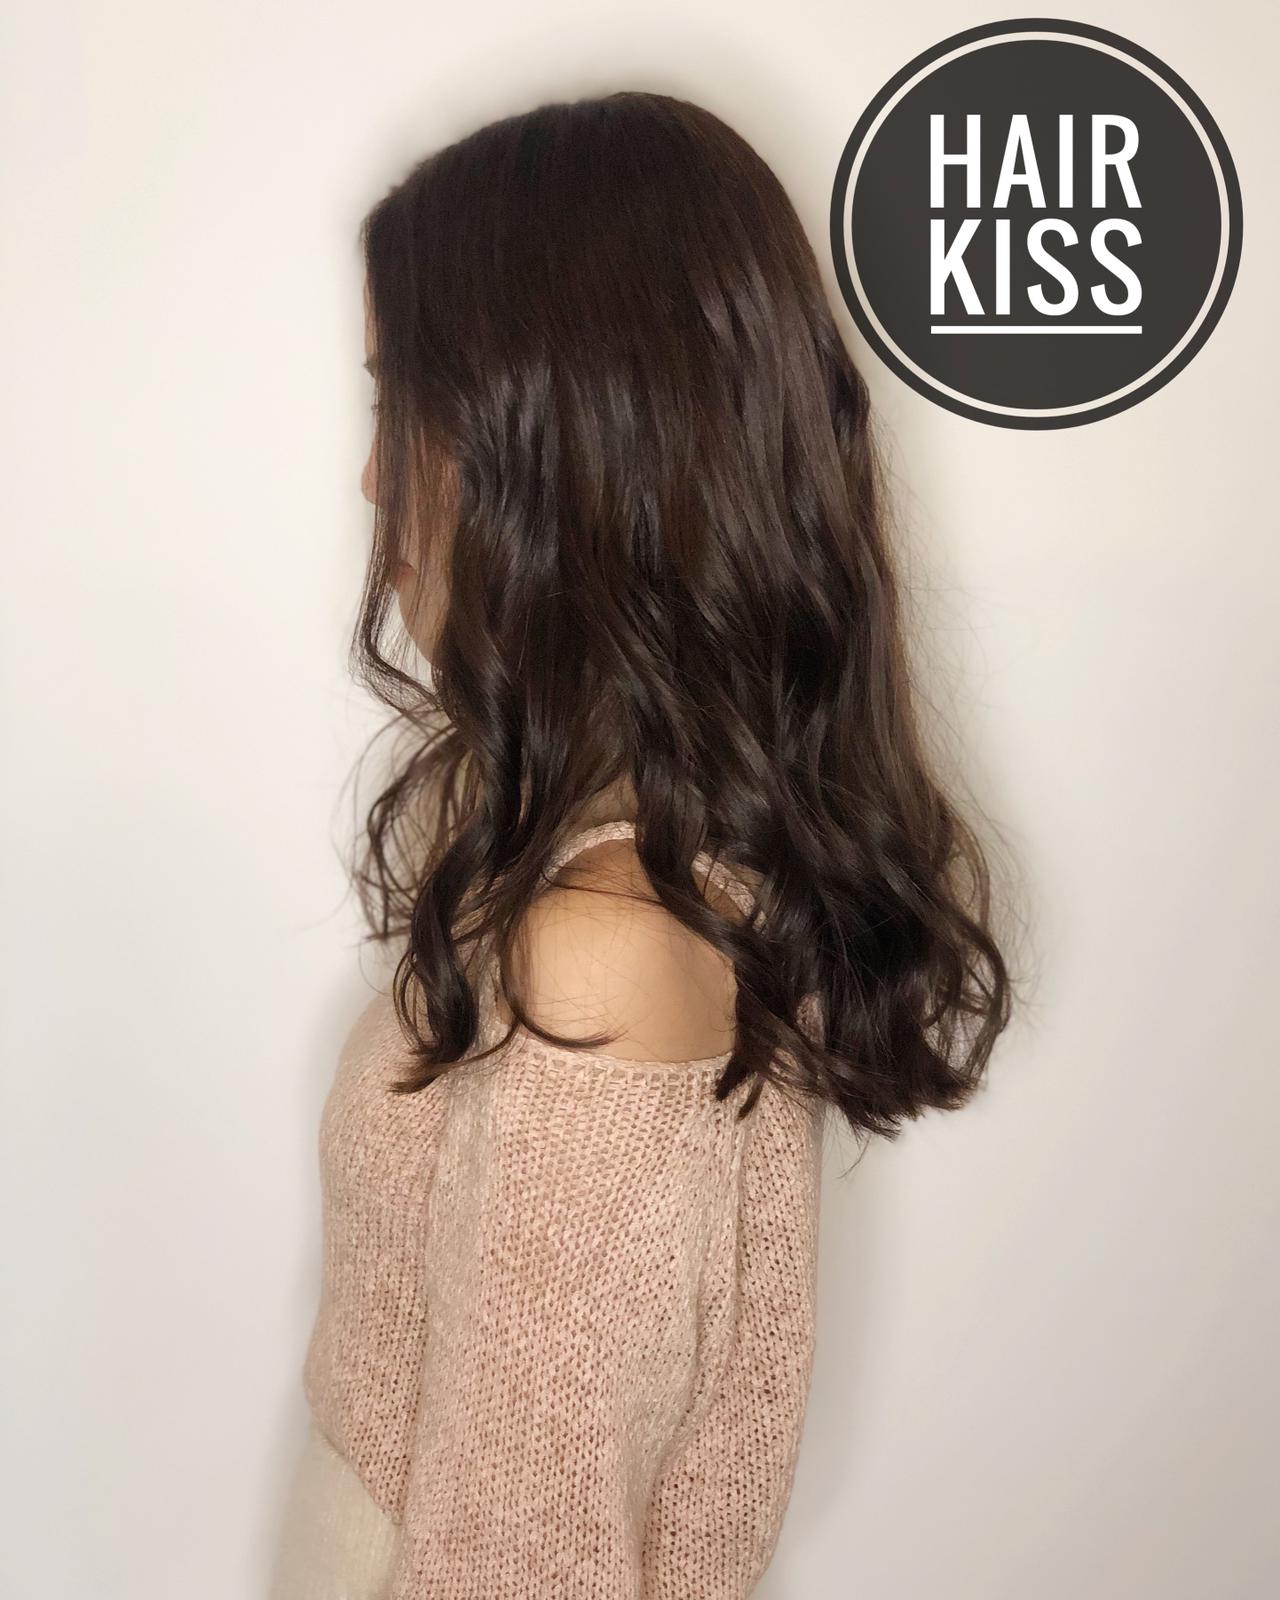 作品參考 / 最新消息:Hair kiss 